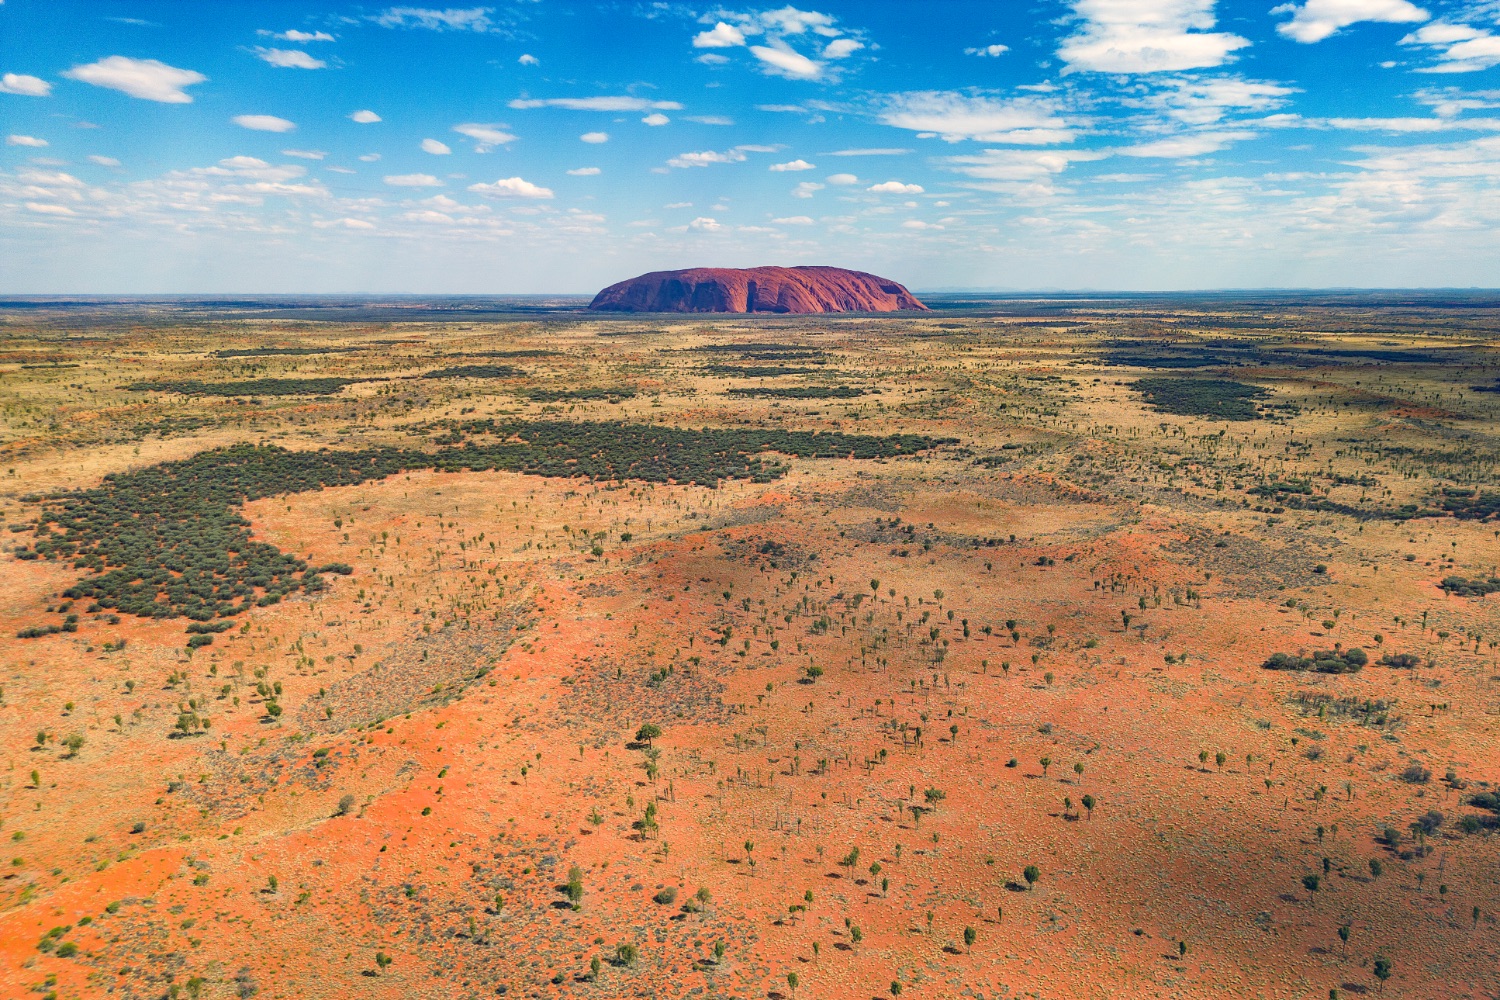 The Outback and Uluru